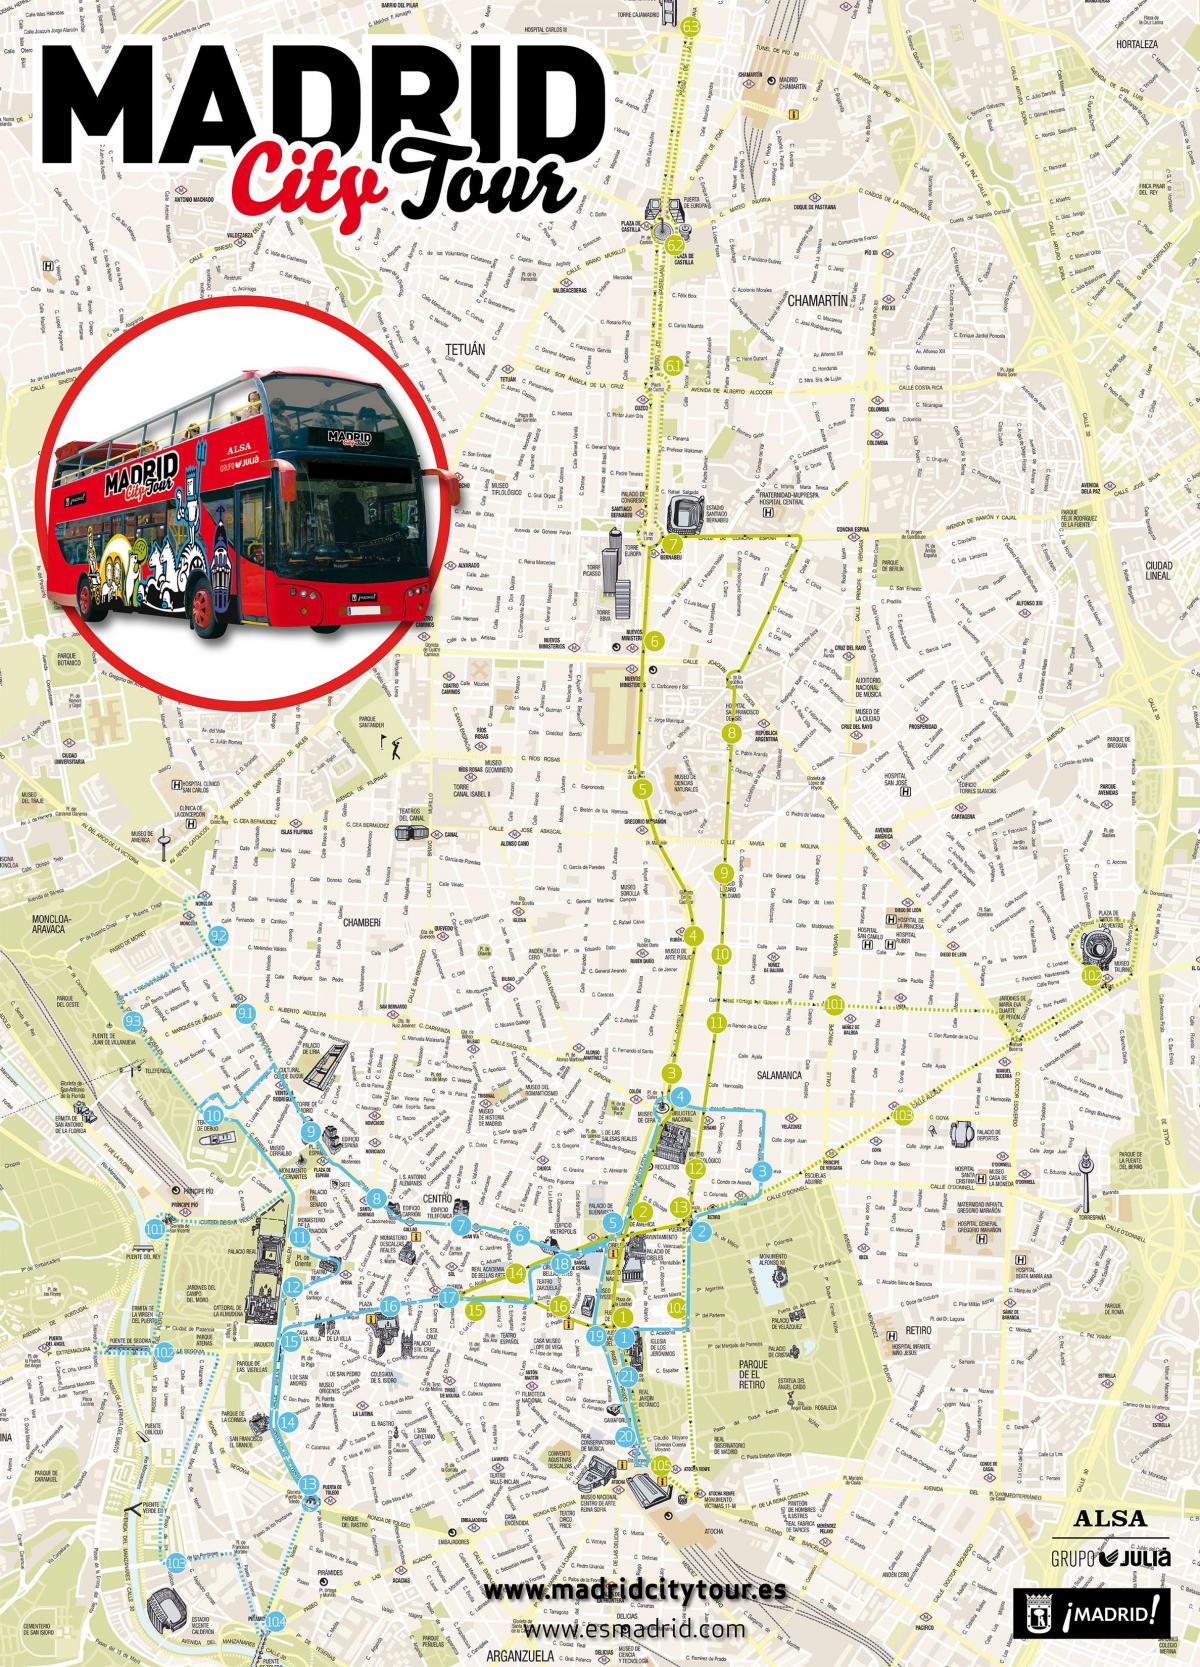 Madrid city buss tur karta